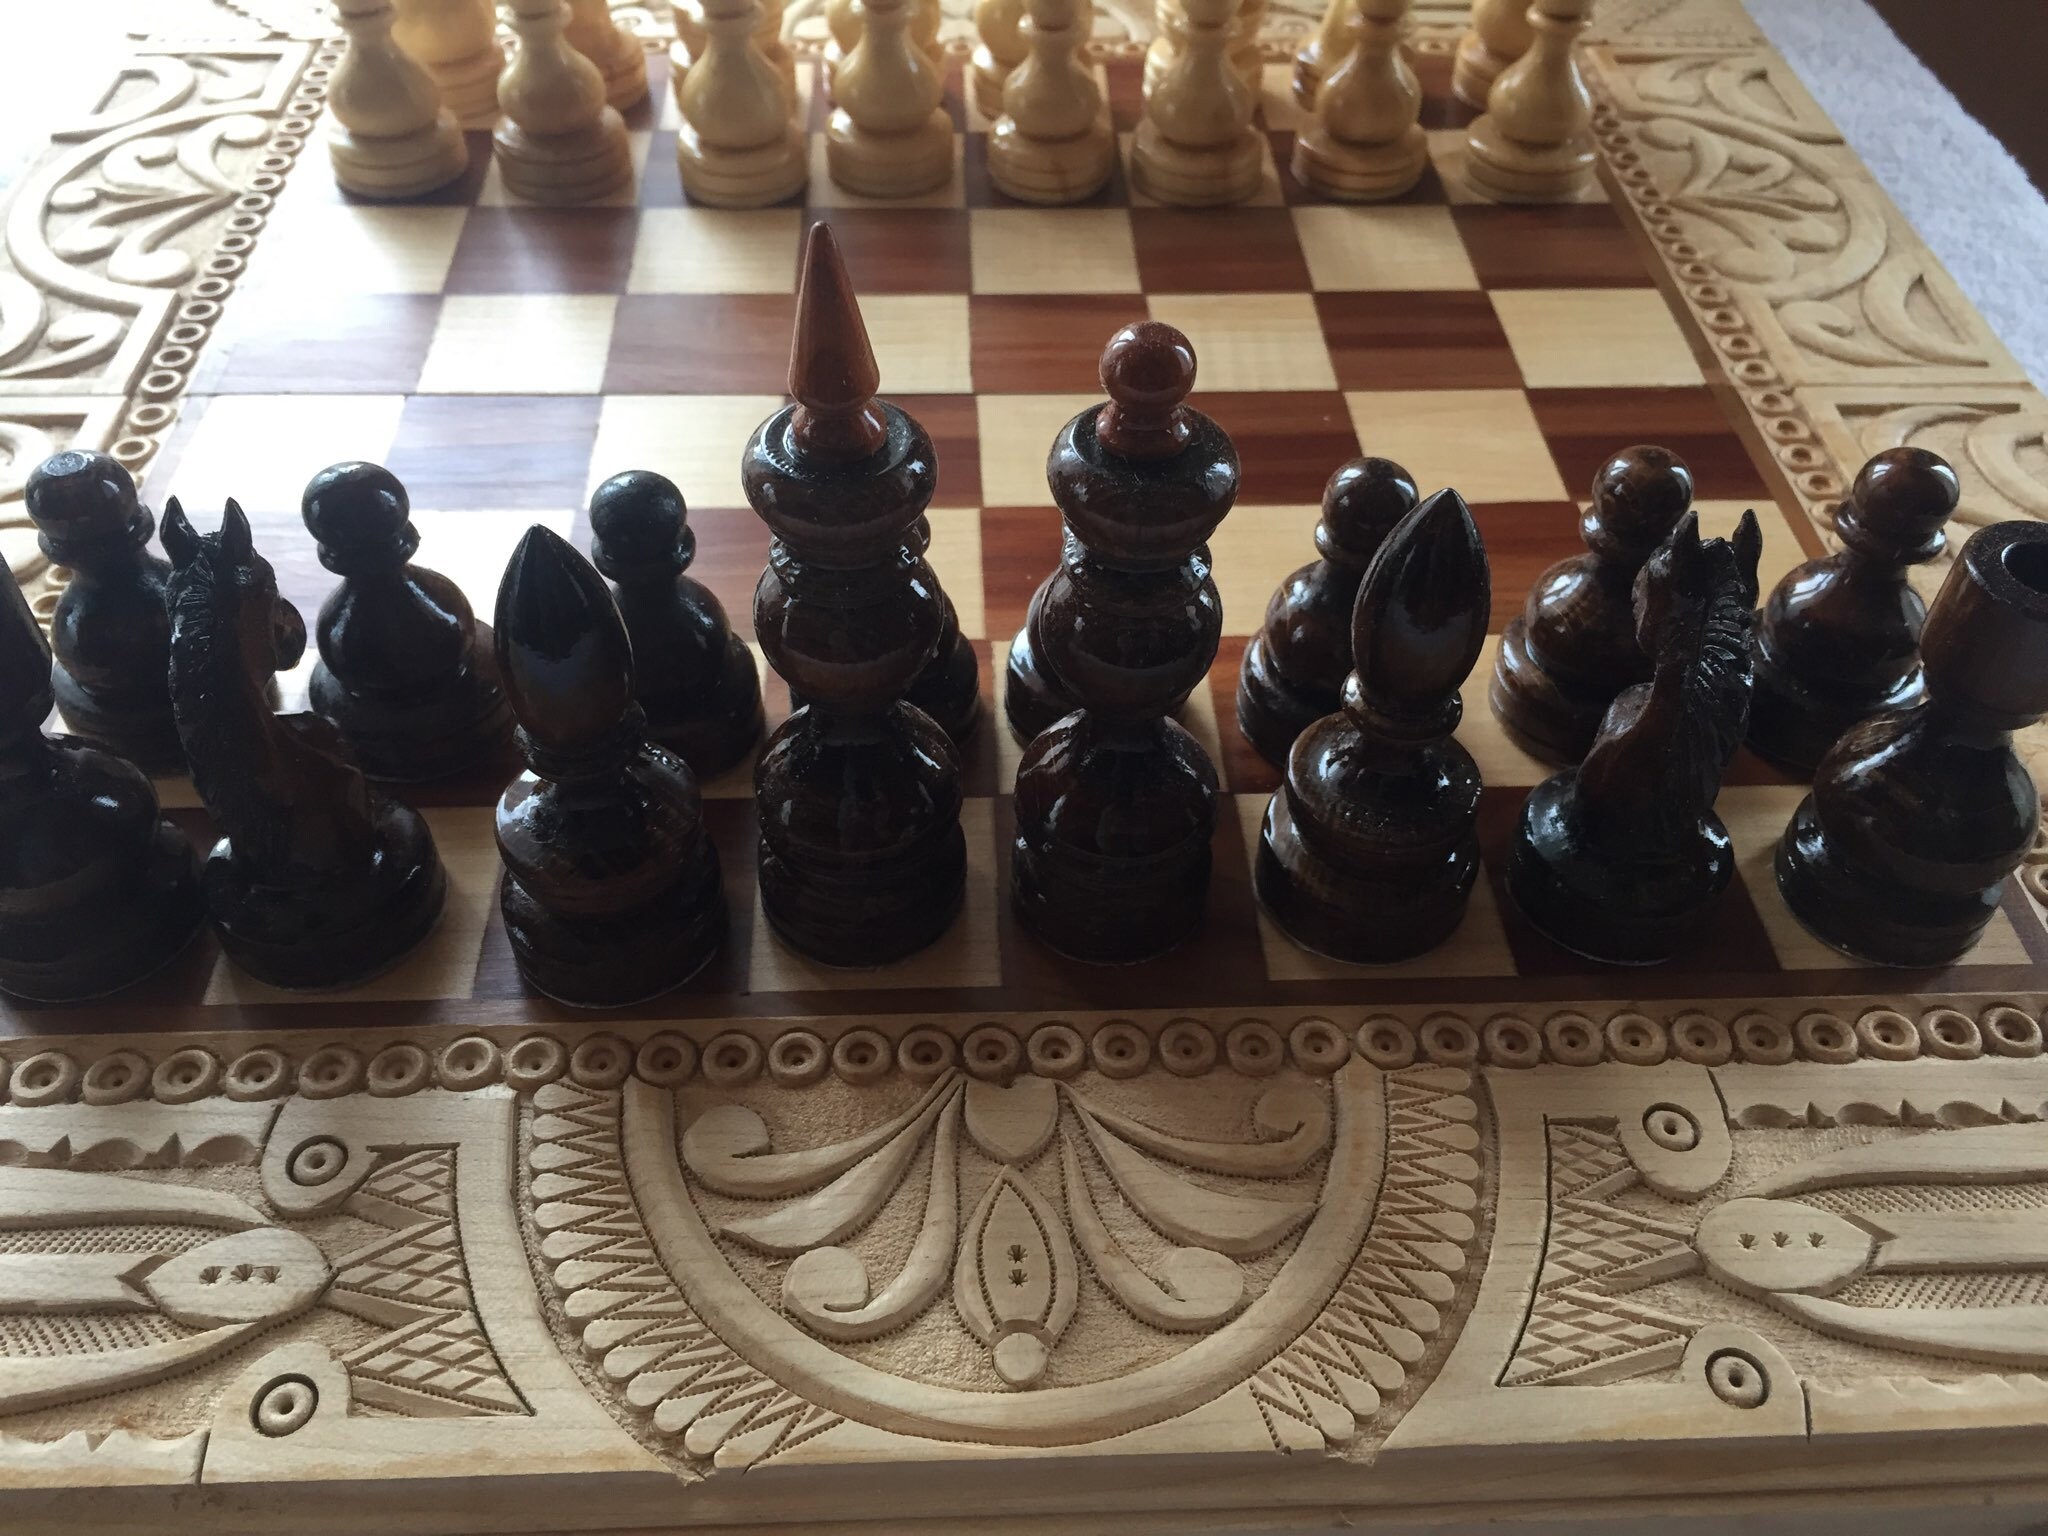 Opera e Chess.com criam navegador de xadrez personalizado